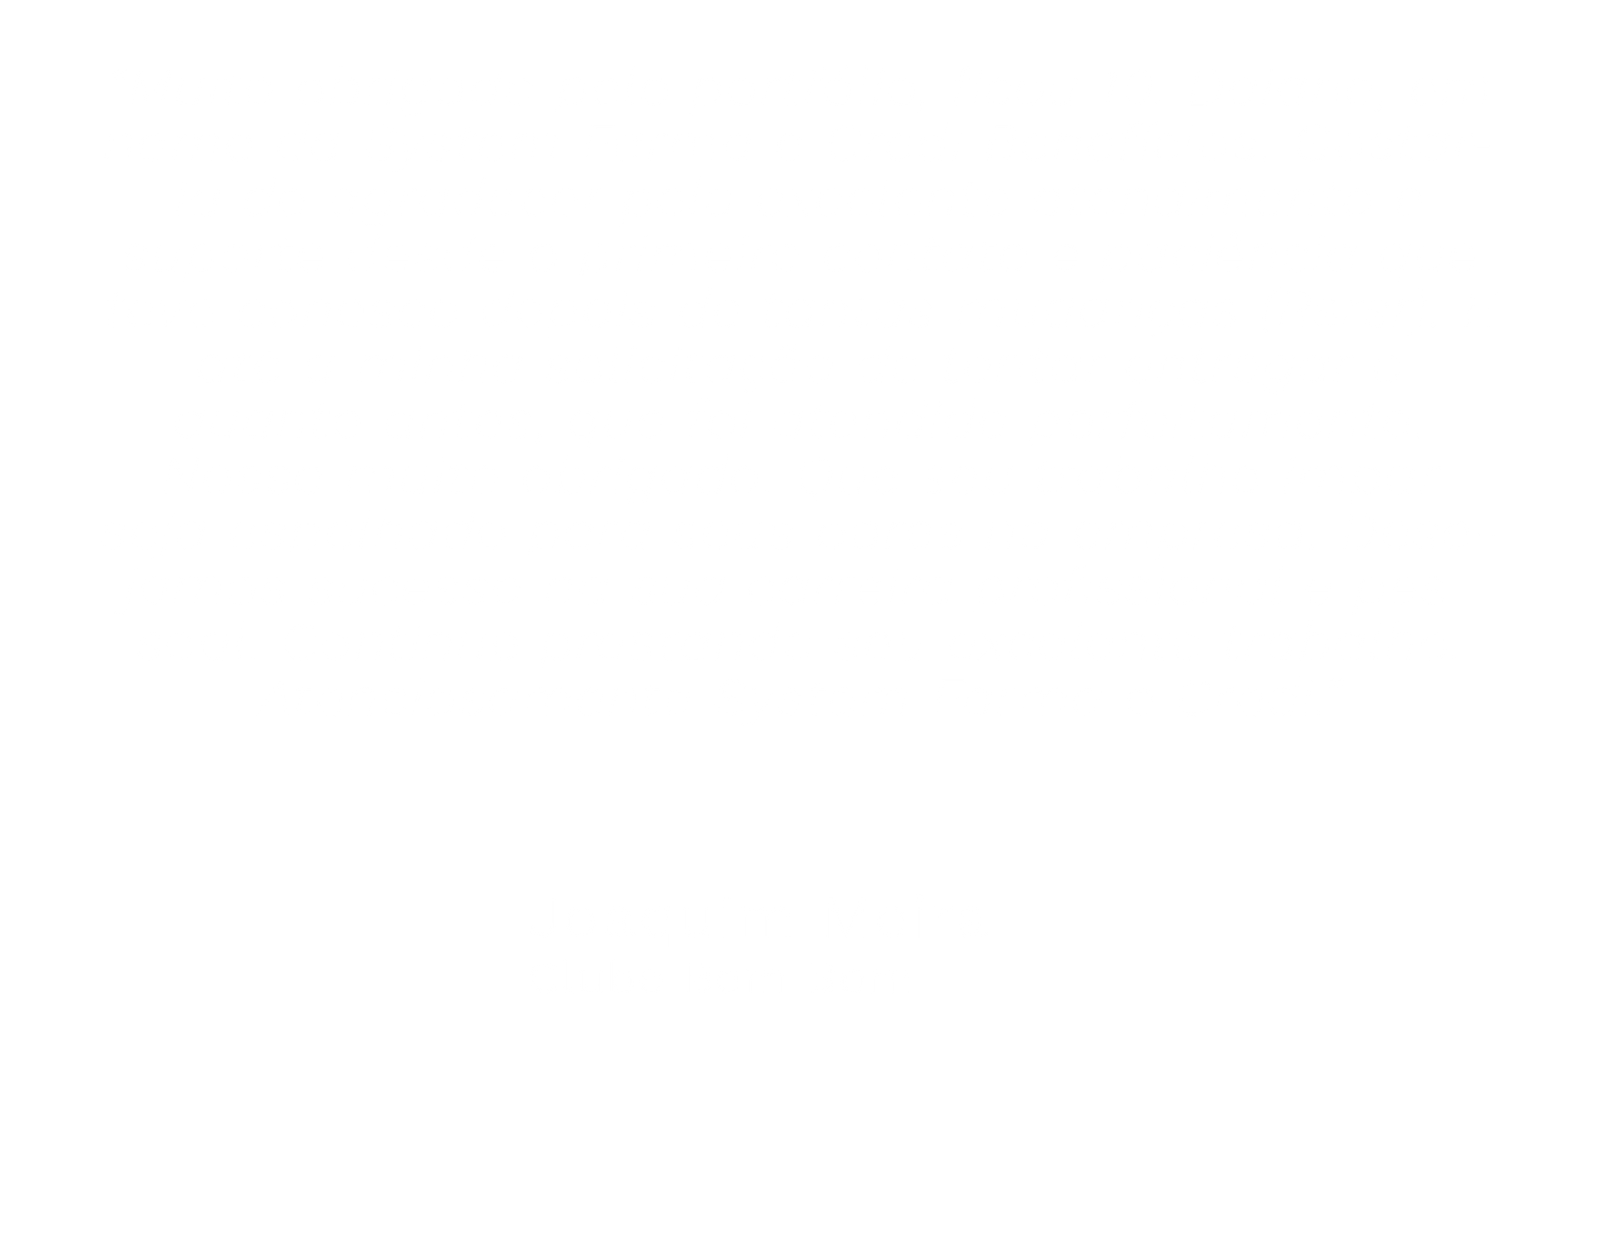 Joaquim Meira - Clube Bem Bom